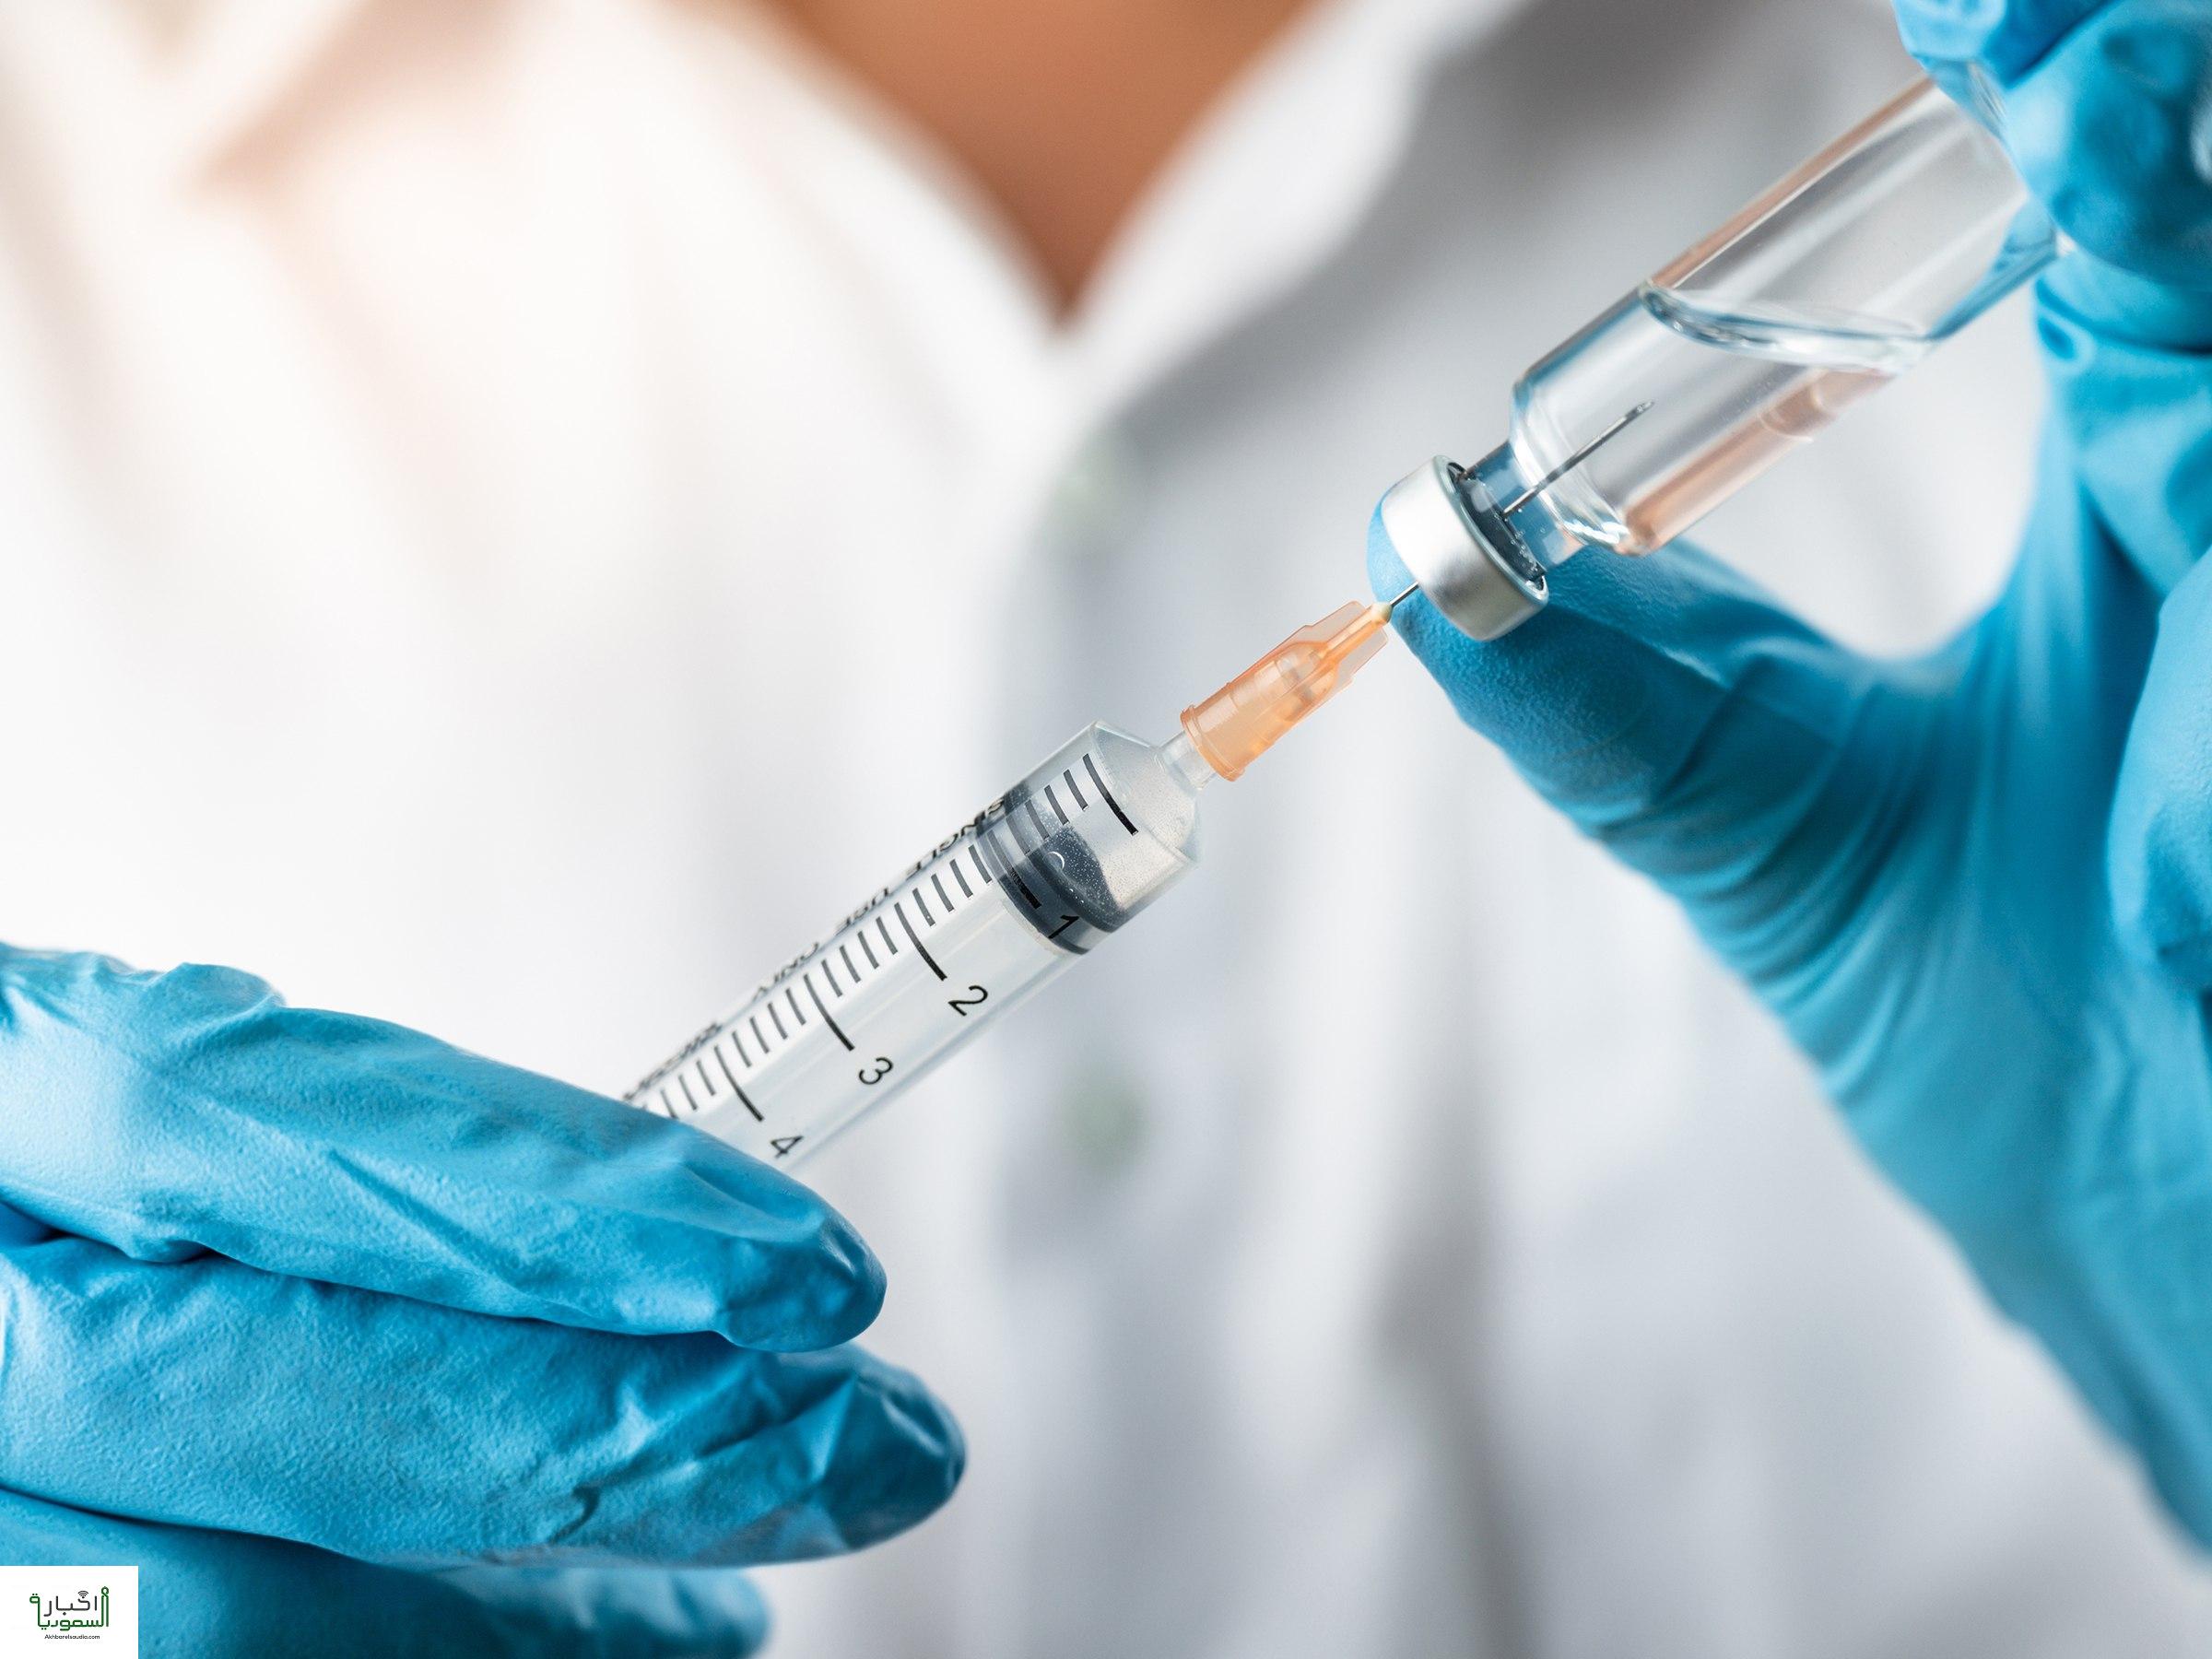 أمريكا توافق على لقاحين لتطعيم الأطفال دون سن الخامسة ضد فيروس كورونا